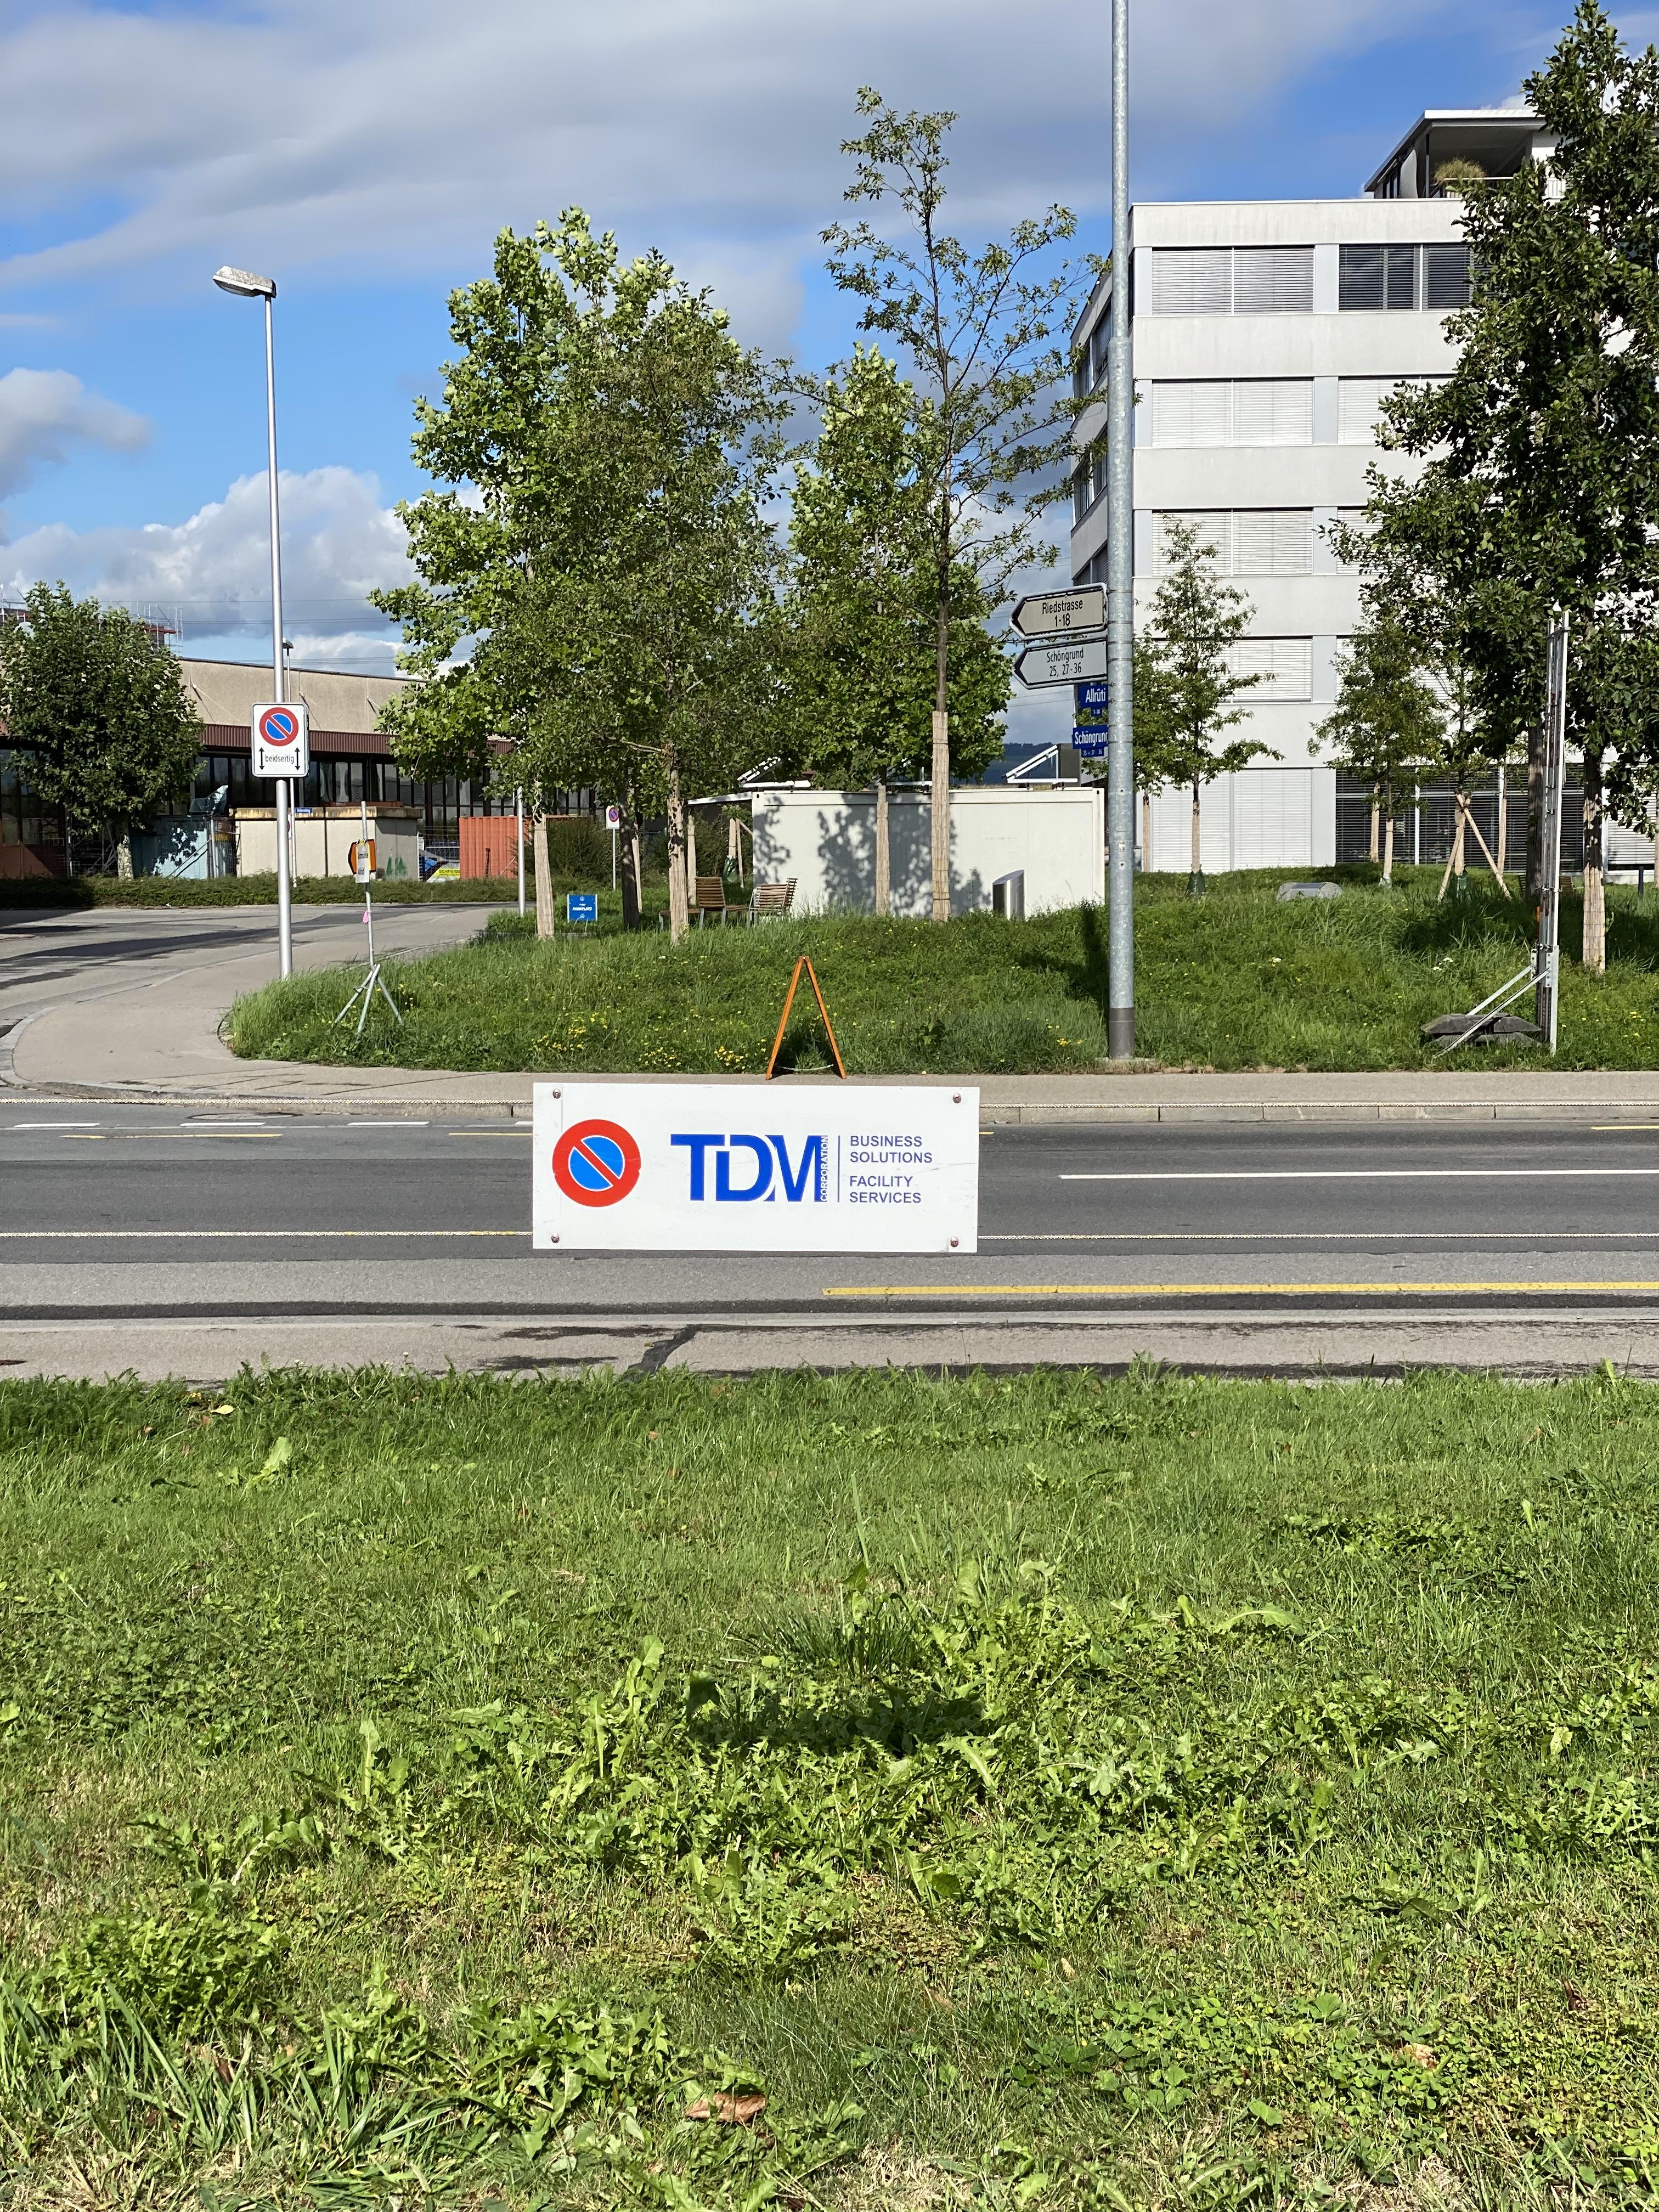 PP-Schild für die Firma TDM Corporation